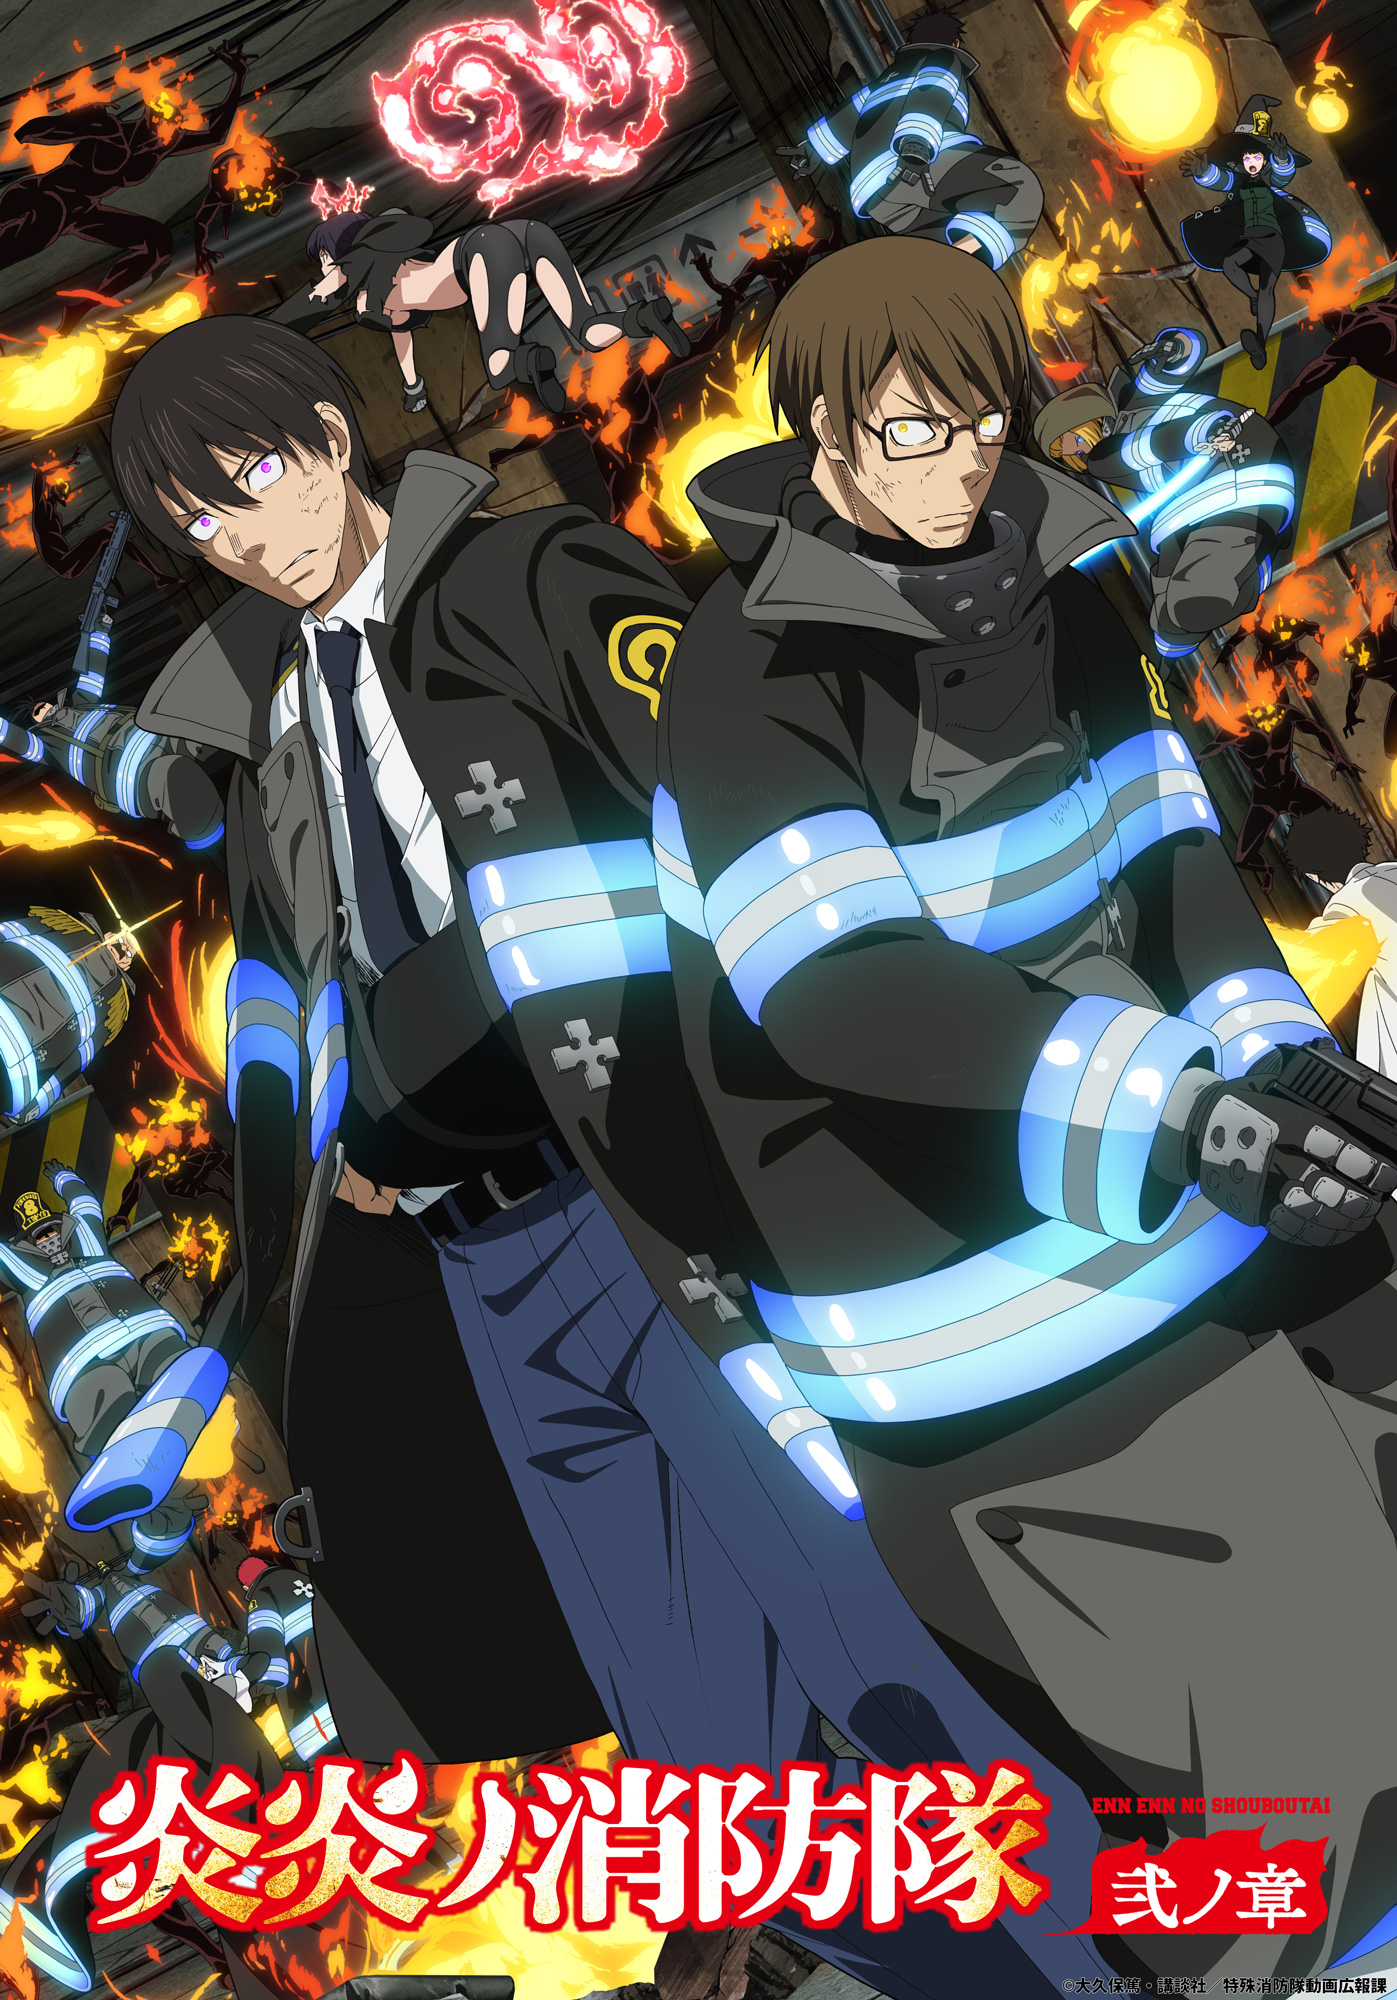 Rumor - El anime Fire Force podría anunciar una tercera temporada  próximamente